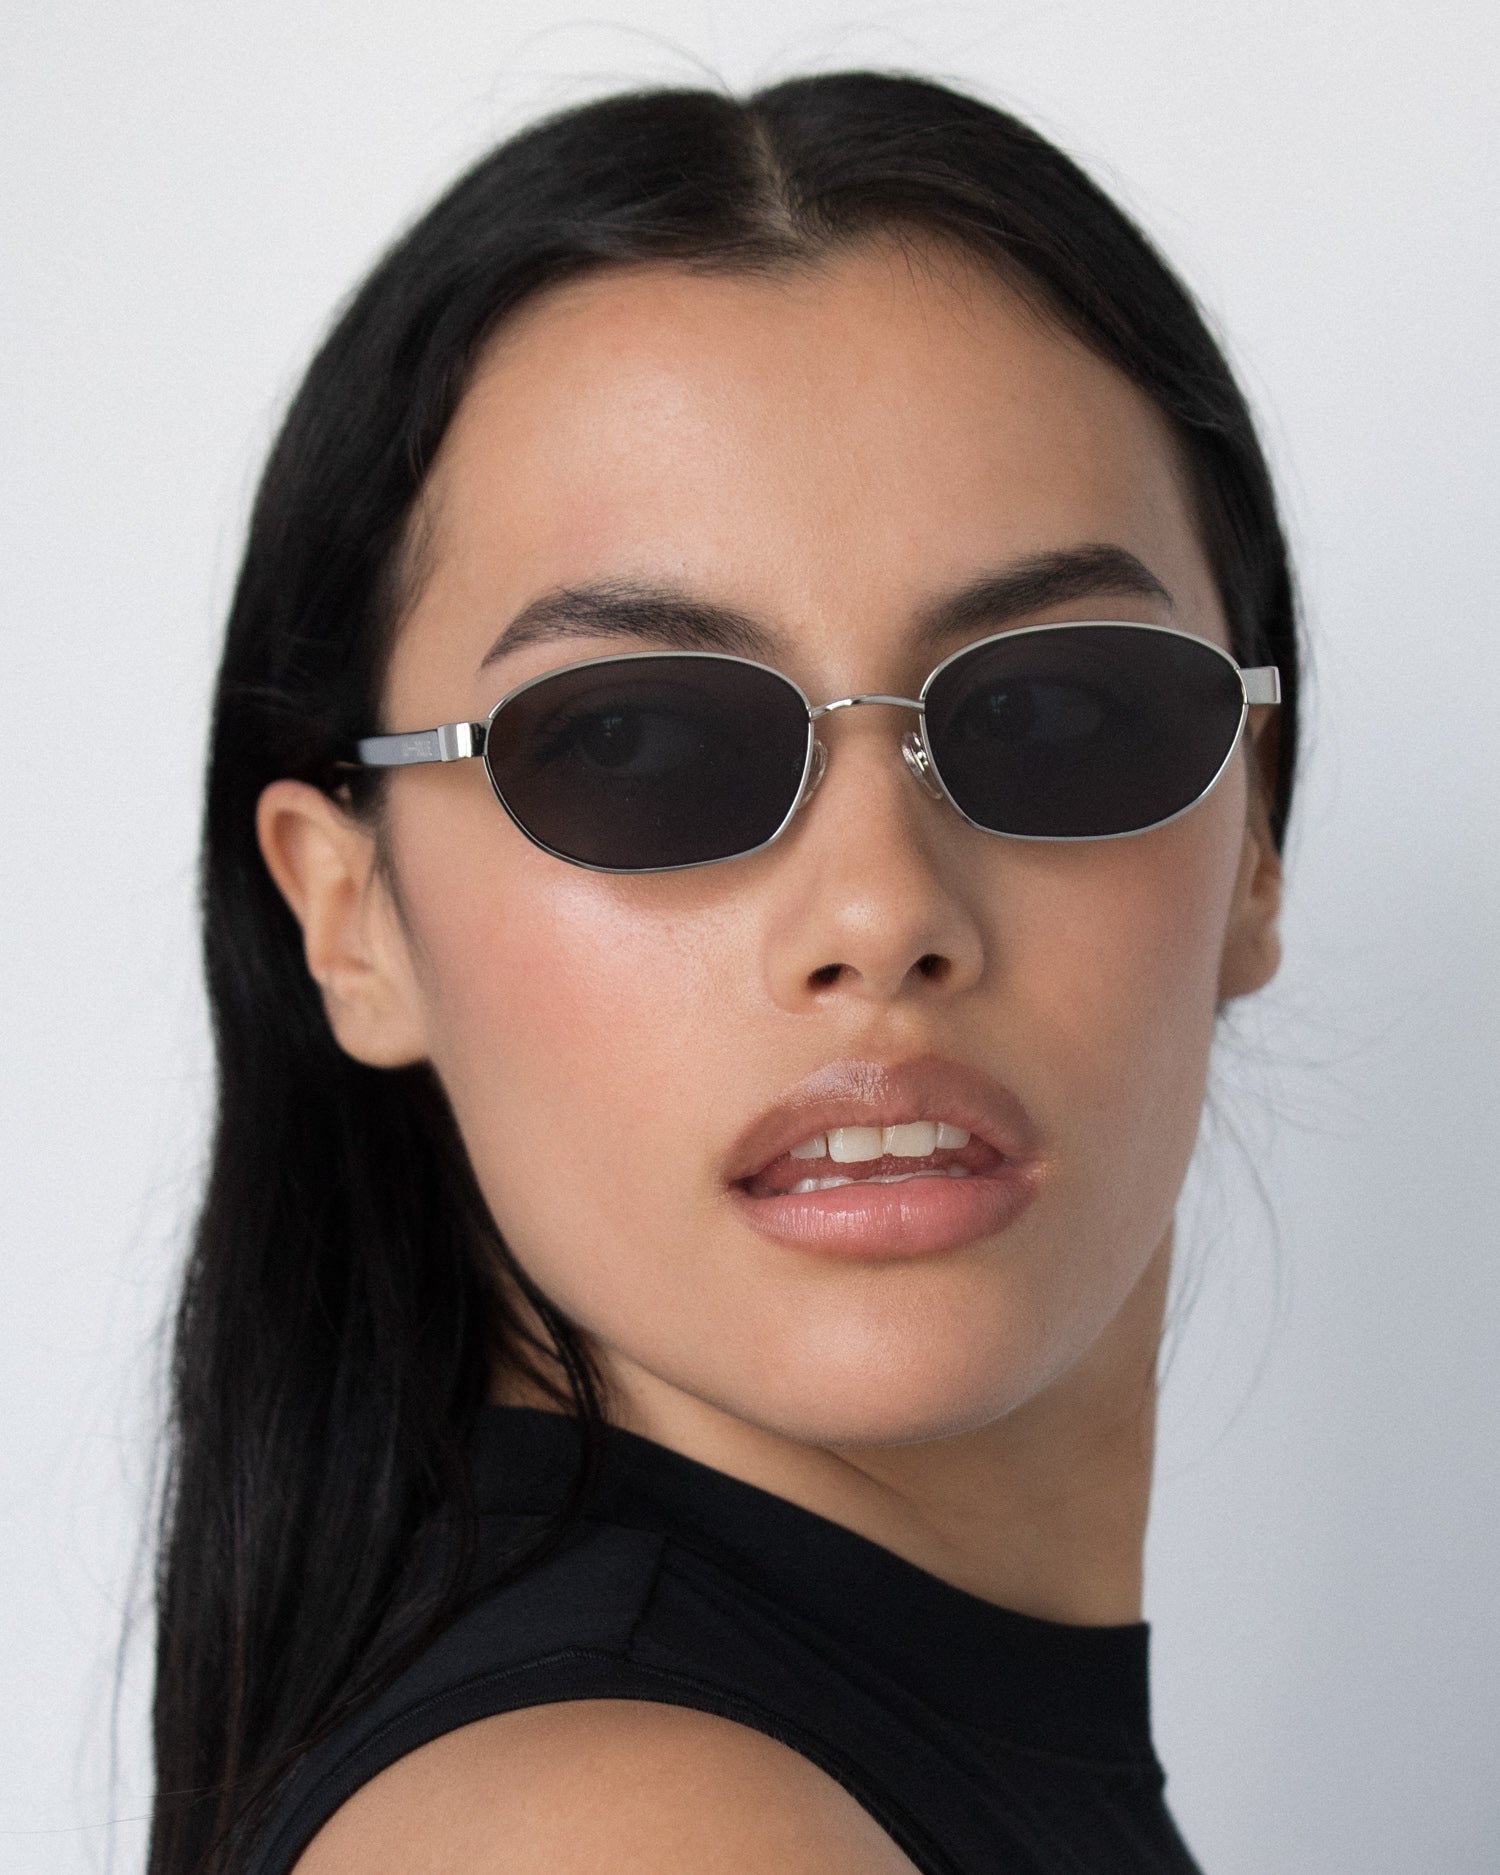 Lara Sunglasses in Silver by LU GOLDIE Eyewear